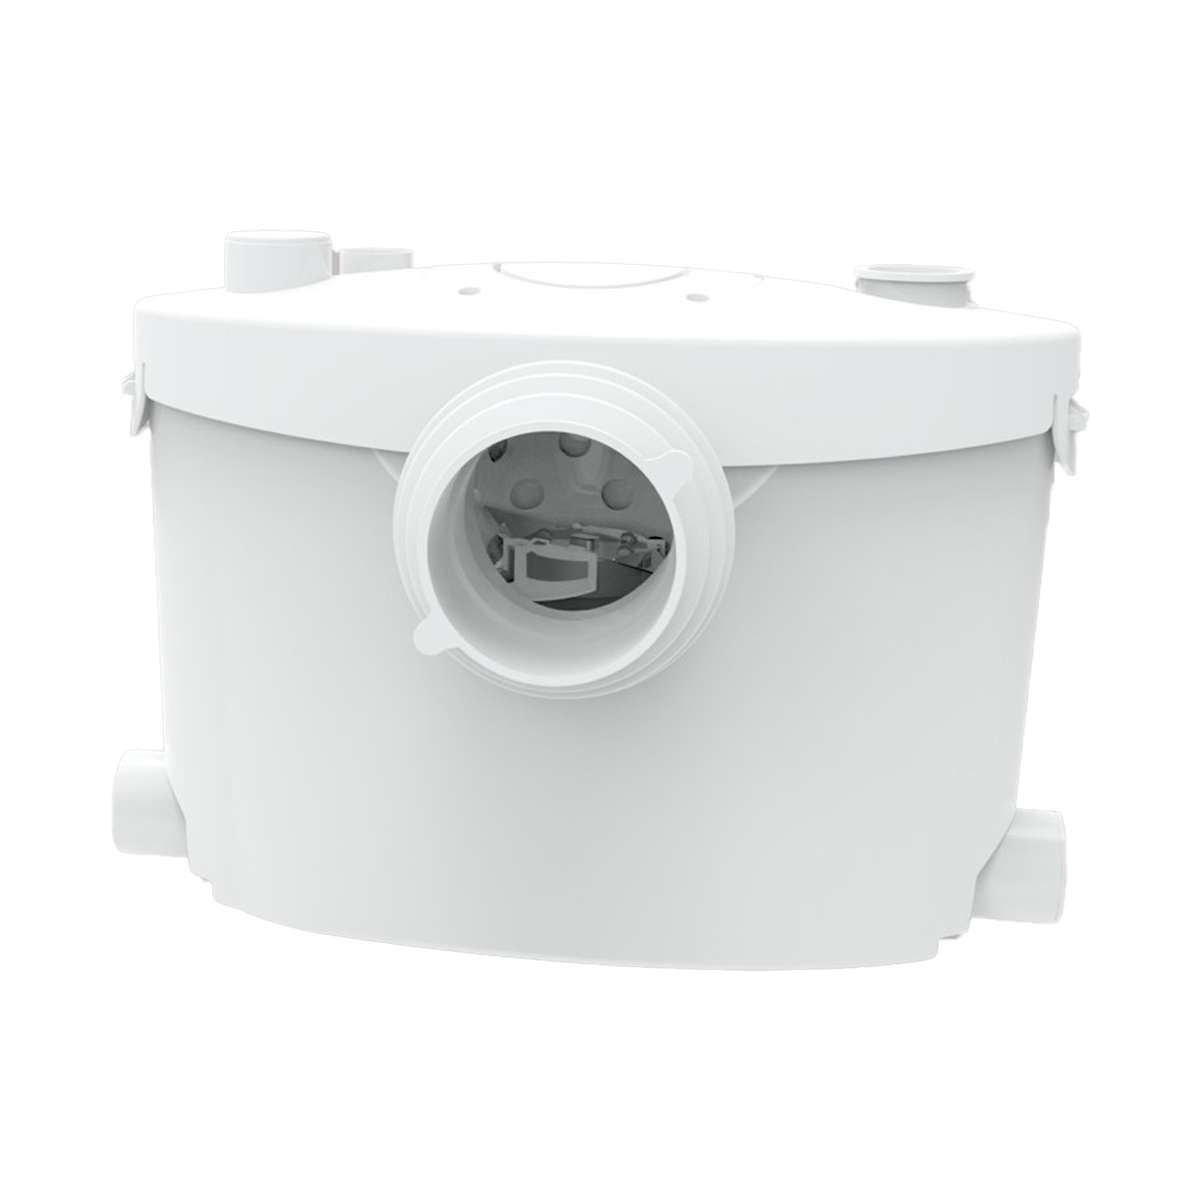 Triturador sanitário Maldic SENSE V4 UP para casa de banho completa com 4 entradas com referência 402 à marca MALDIC